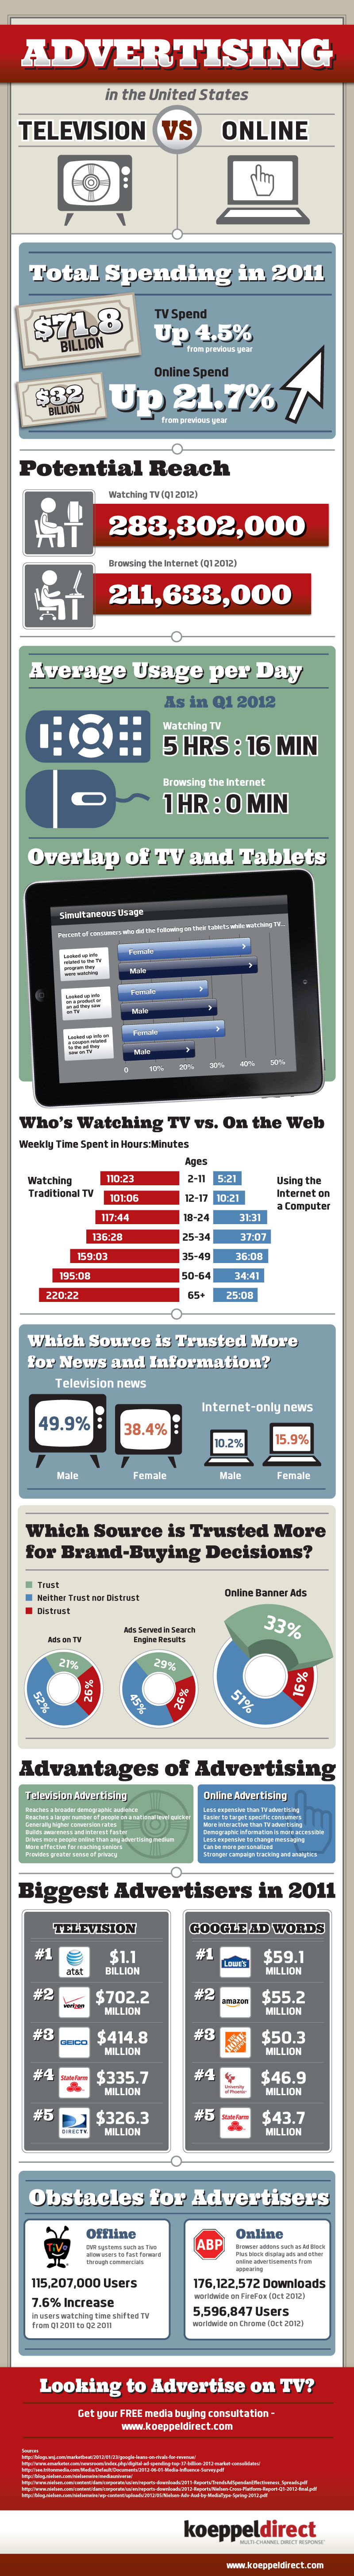 Advertising Showdown: TV vs Online Advertising